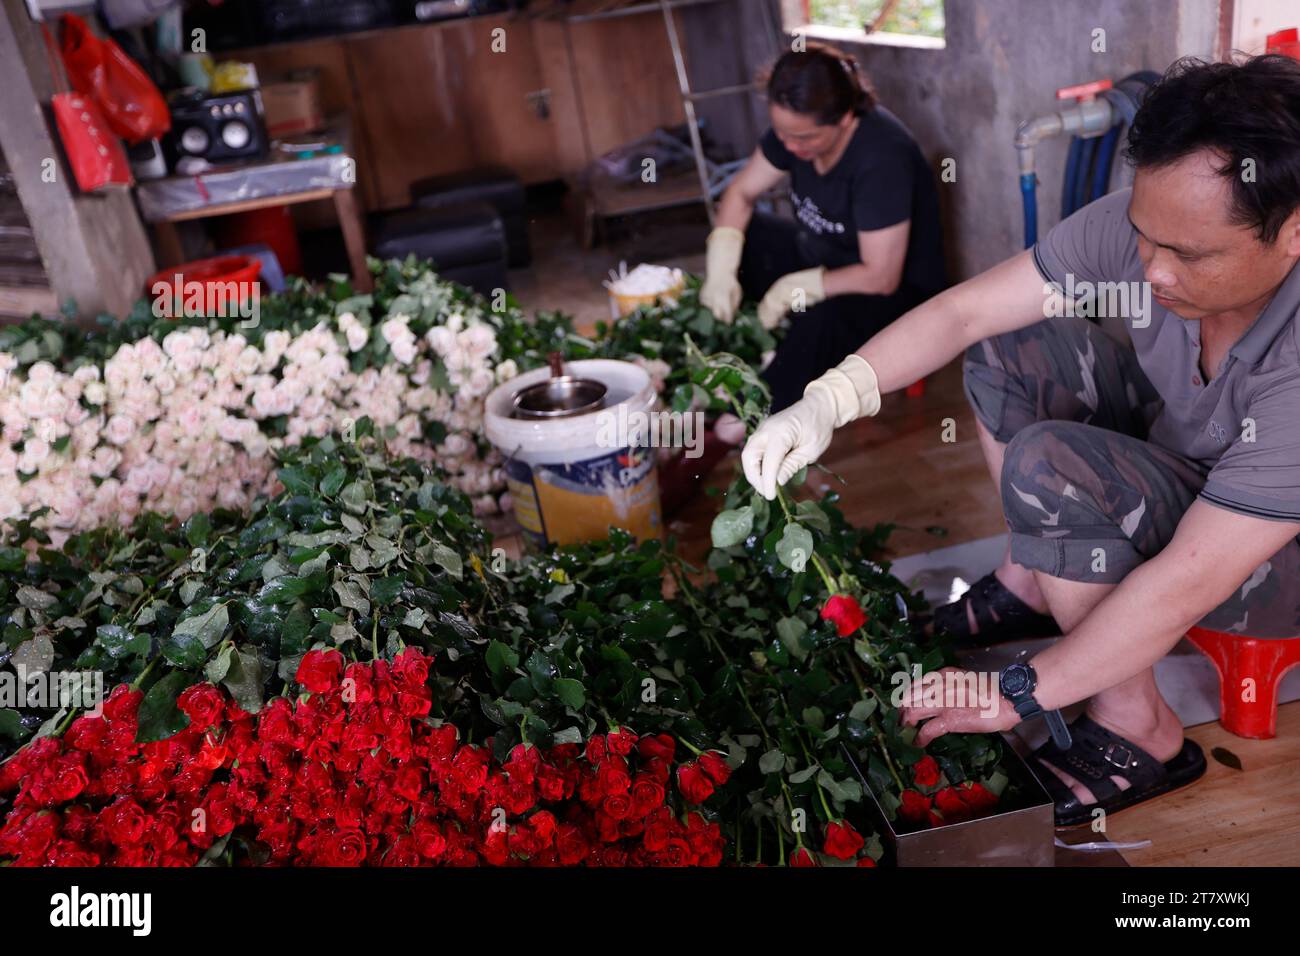 Homme au travail en horticulture, usine de fleurs, production de roses, Dalat, Vietnam, Indochine, Asie du Sud-est, Asie Banque D'Images